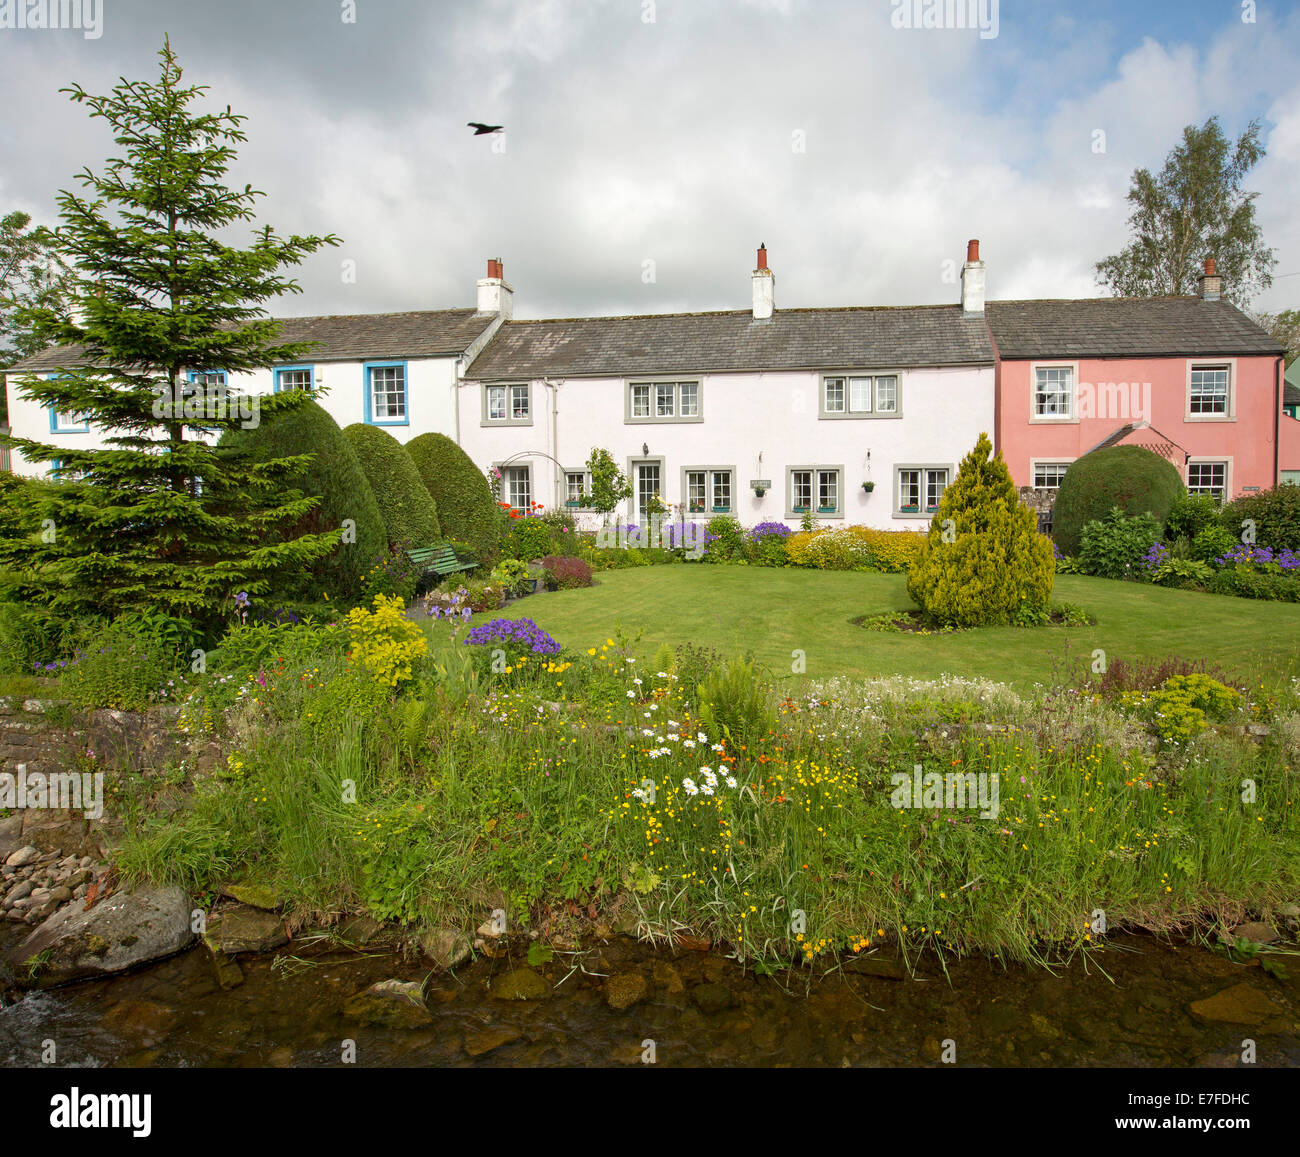 Weiß und Pink lackiert englische Hütten, Gärten mit Massen von bunten Frühlingsblumen, Sträuchern und Bächlein am Dorf von Caldbeck in Cumbria Stockfoto